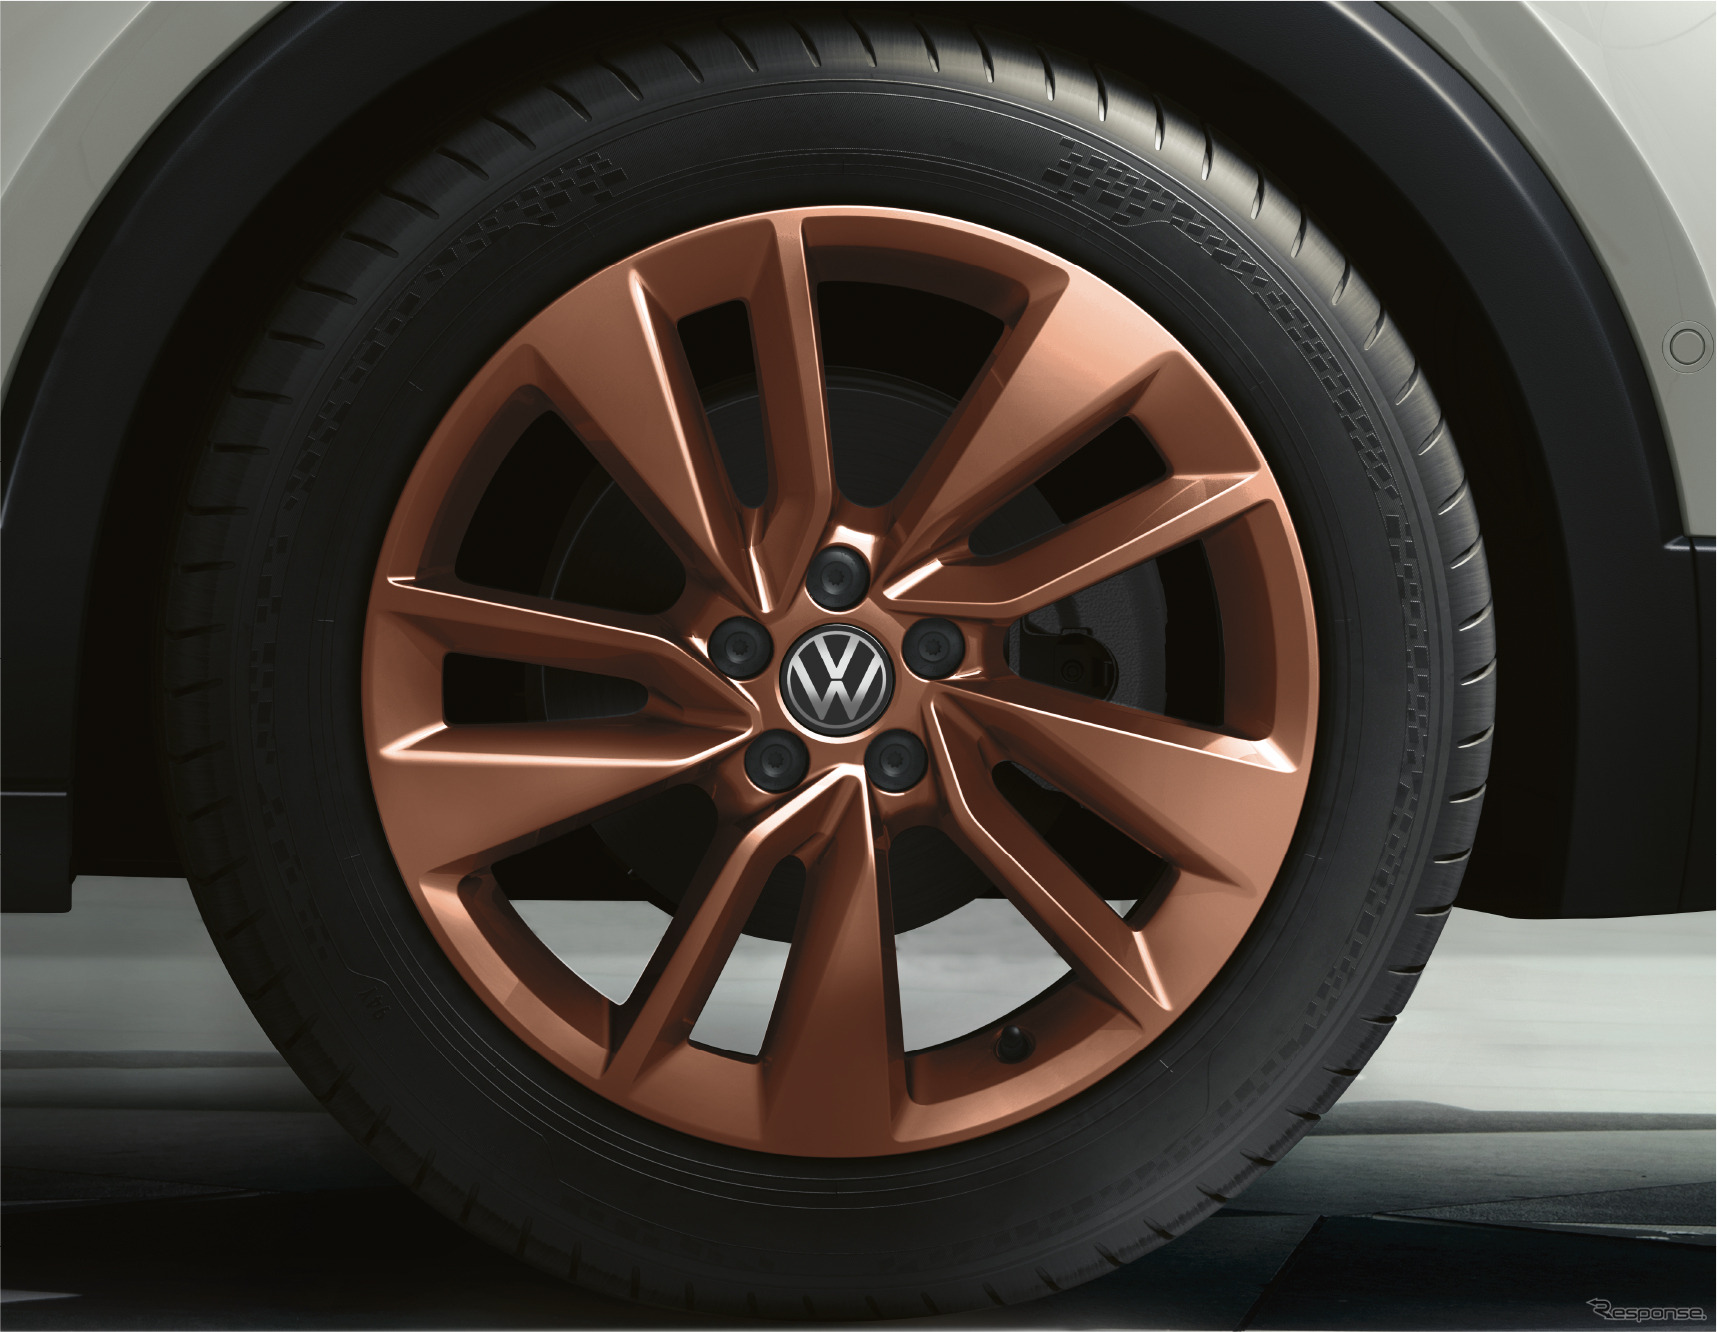 VW Tクロス カッパースタイル 専用17インチアルミホイール